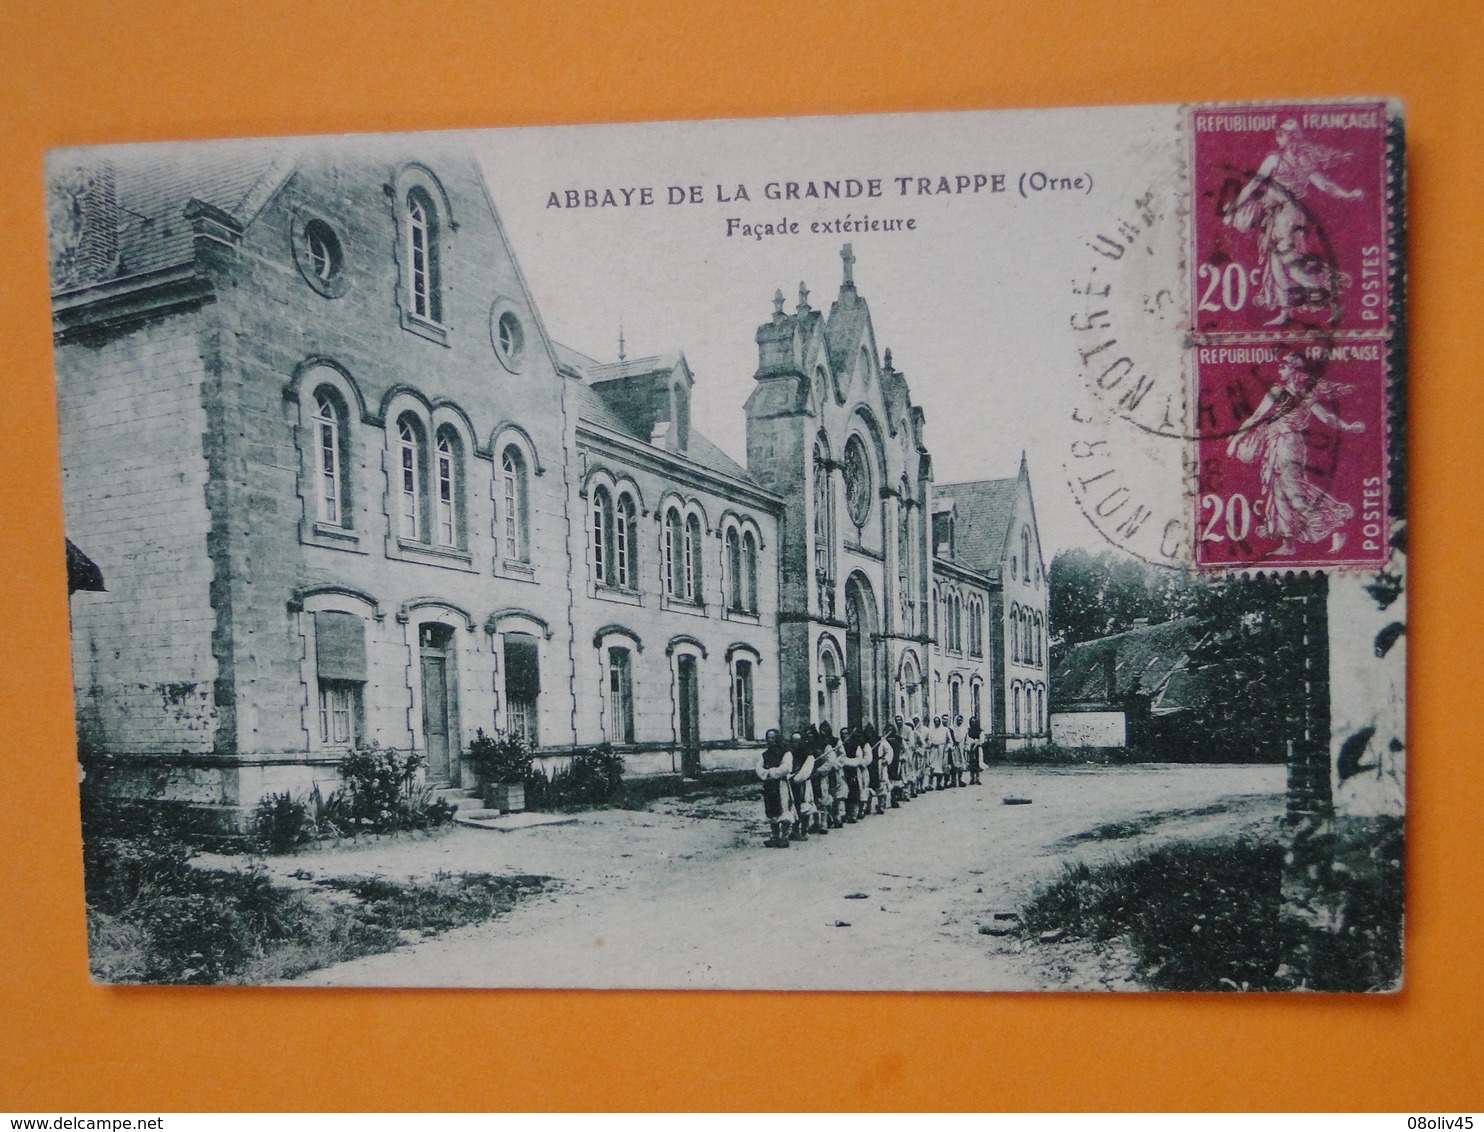 Joli Lot de 50 Cartes Postales Anciennes FRANCE  -- TOUTES ANIMEES - Voir les 50 scans - Lot N° 4